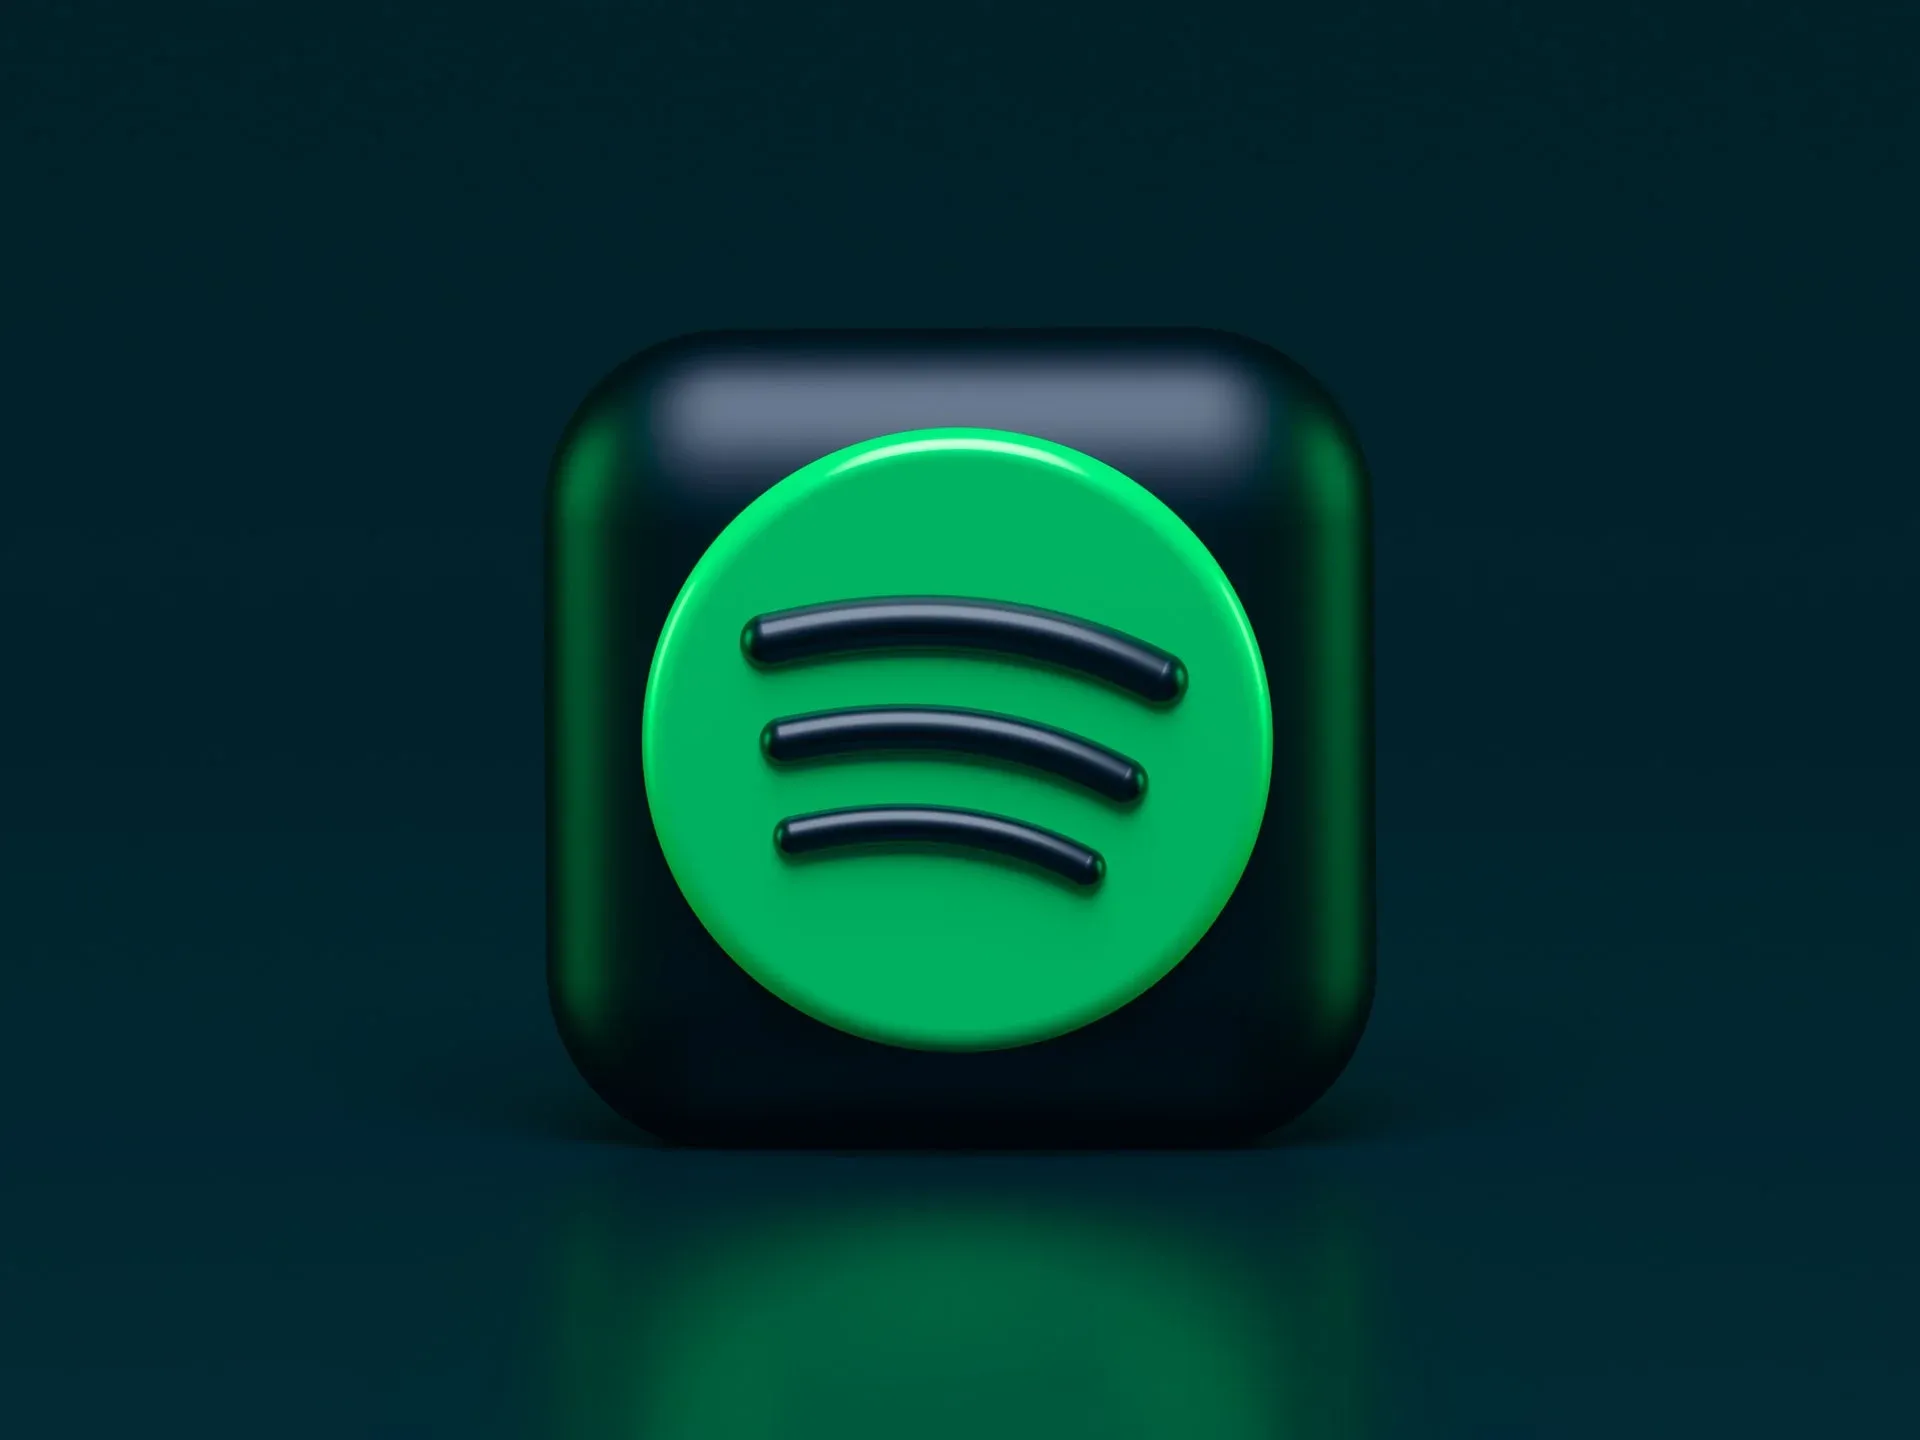 Escucha música en Spotify sin anuncios desde tu PC